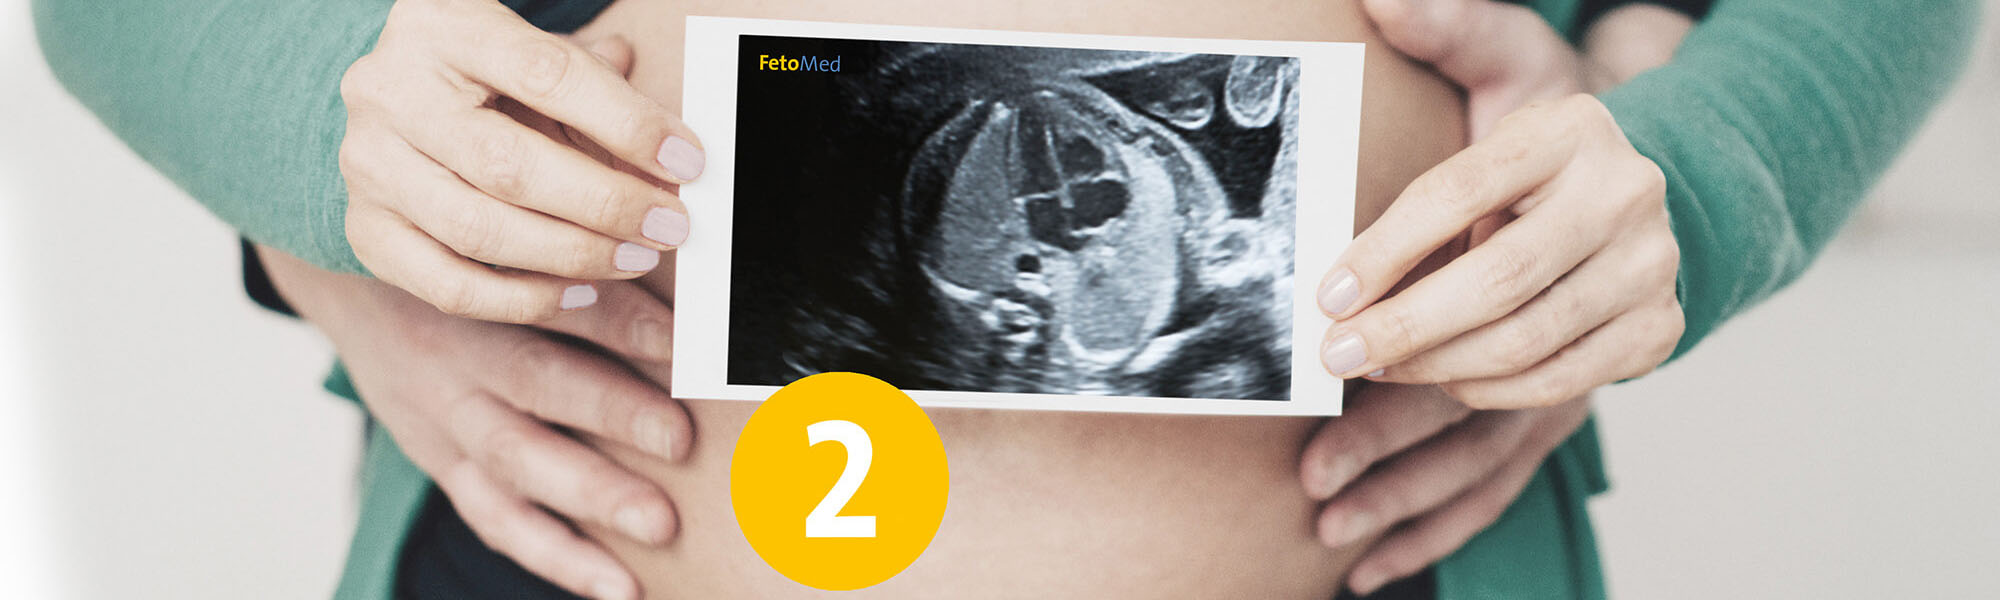 Ultraschall-Bild eines ungeborenen Kindes vor einem entblößten schwangeren Bauch.